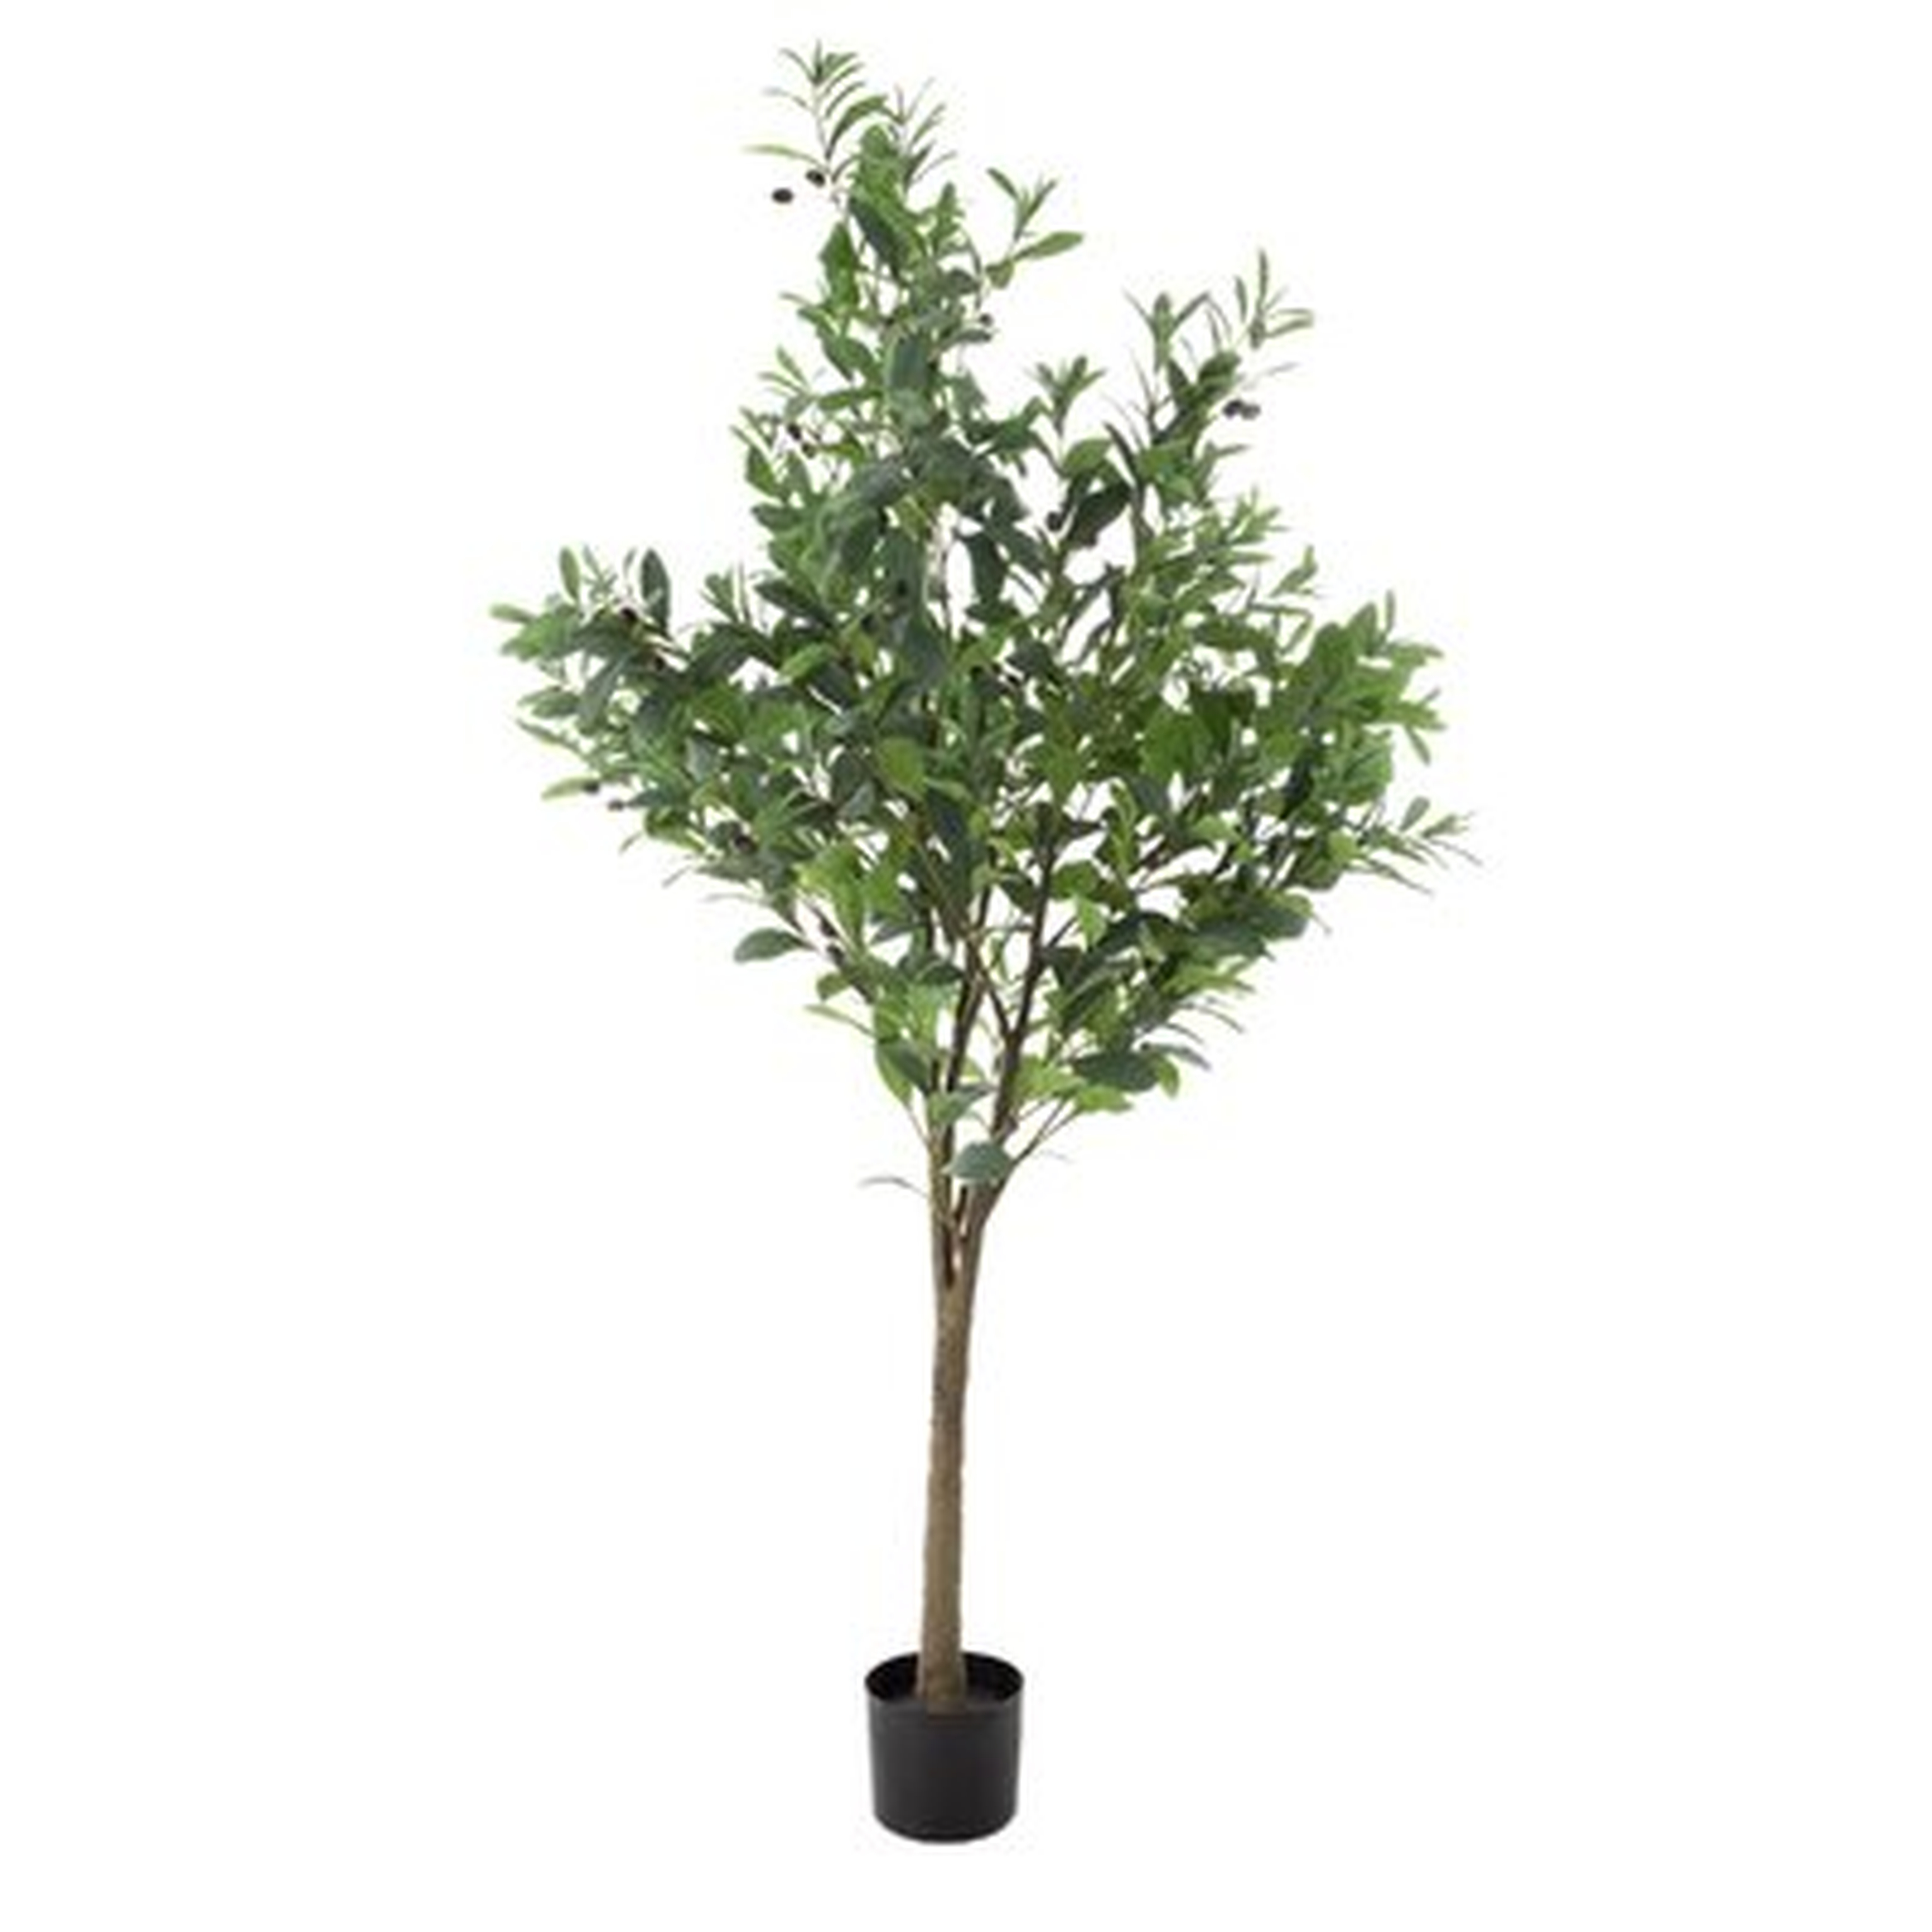 Artificial Olive Tree in Pot - Wayfair